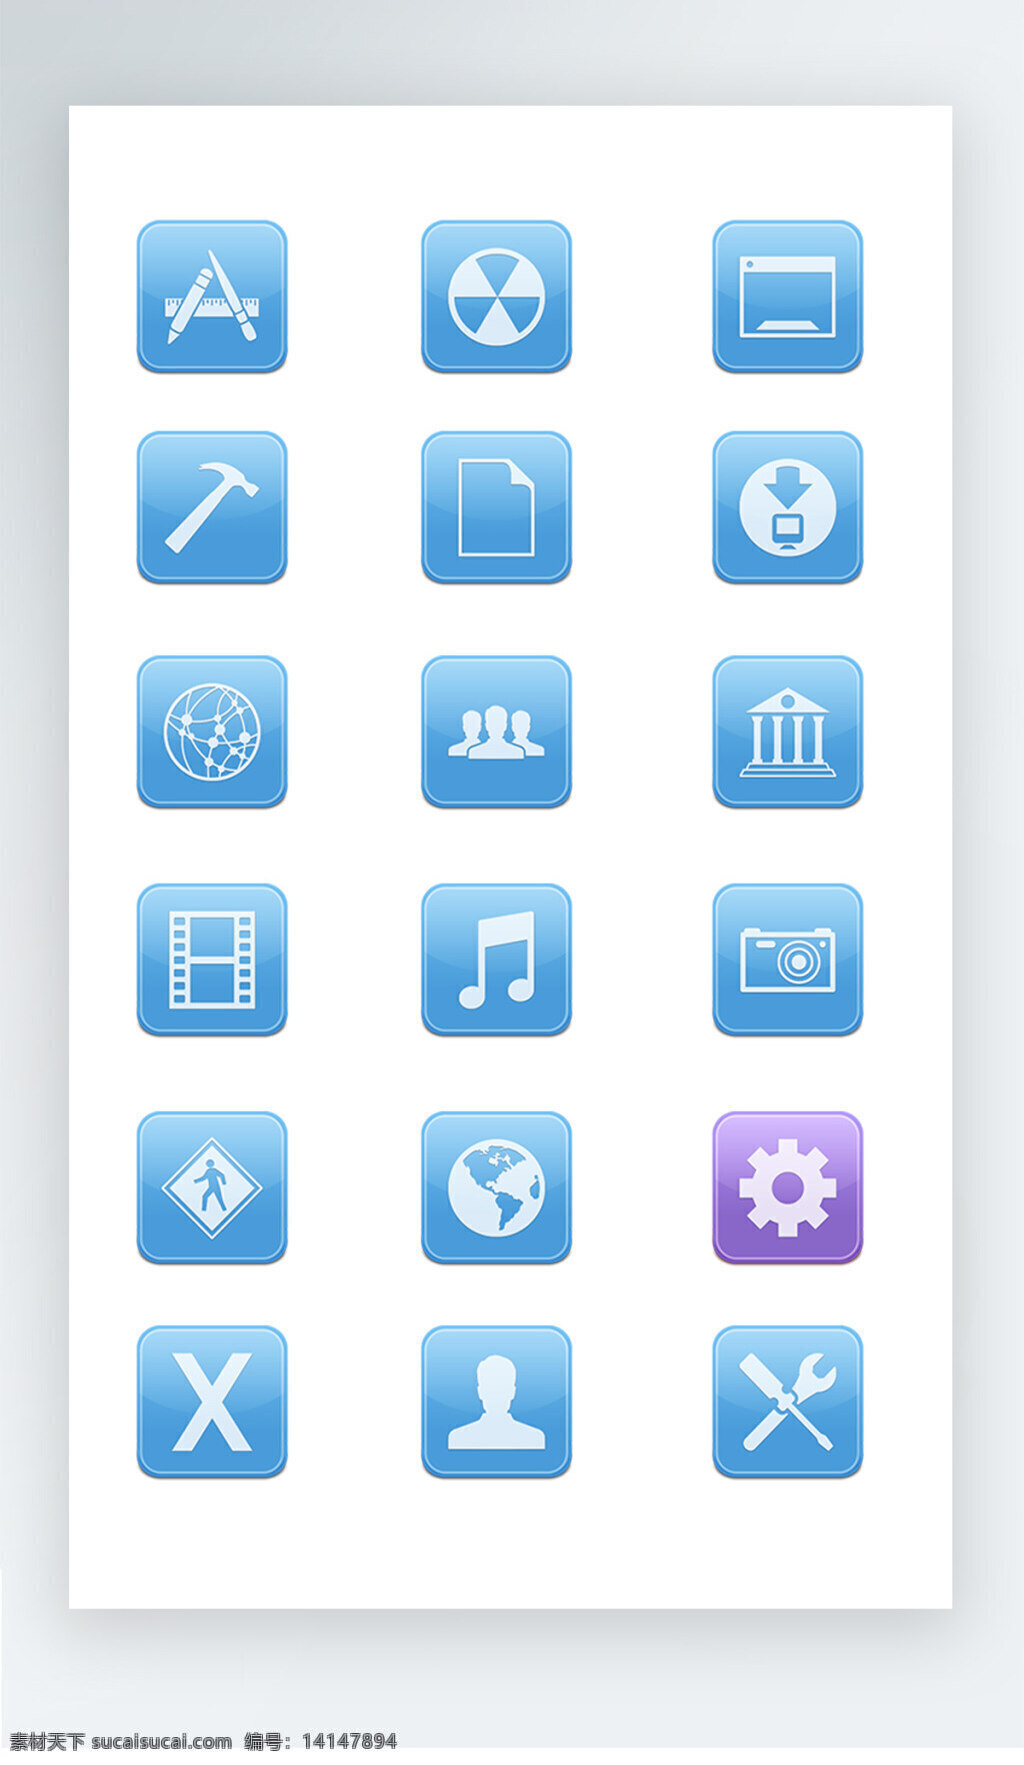 按钮 图标 彩色 工具 iconpng 按钮图标 彩色工具图标 icon 设置图标